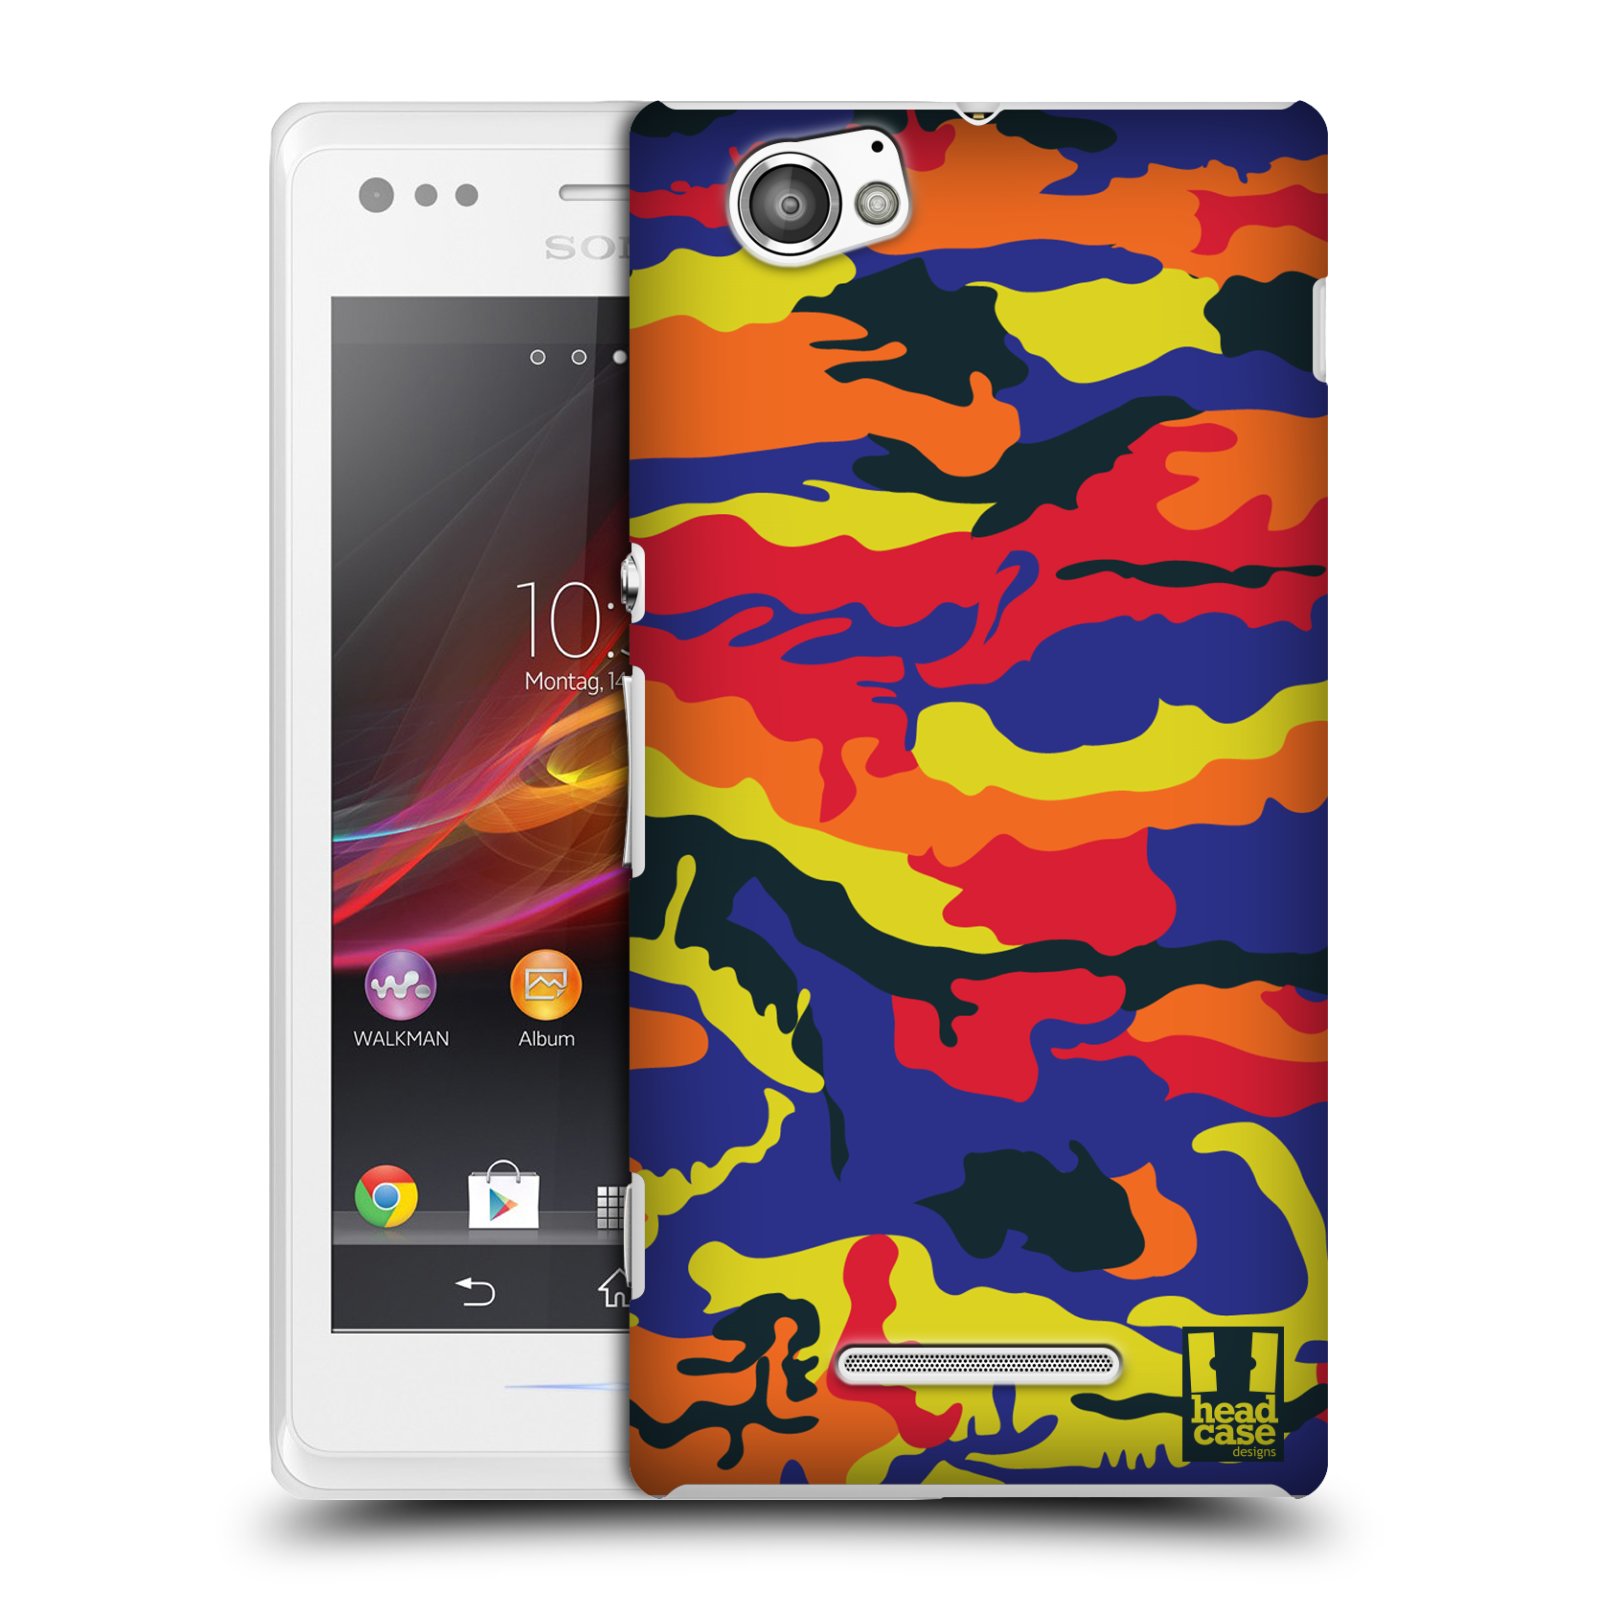 HEAD CASE plastový obal na mobil Sony Xperia M vzor Barevná kamufláž RGB